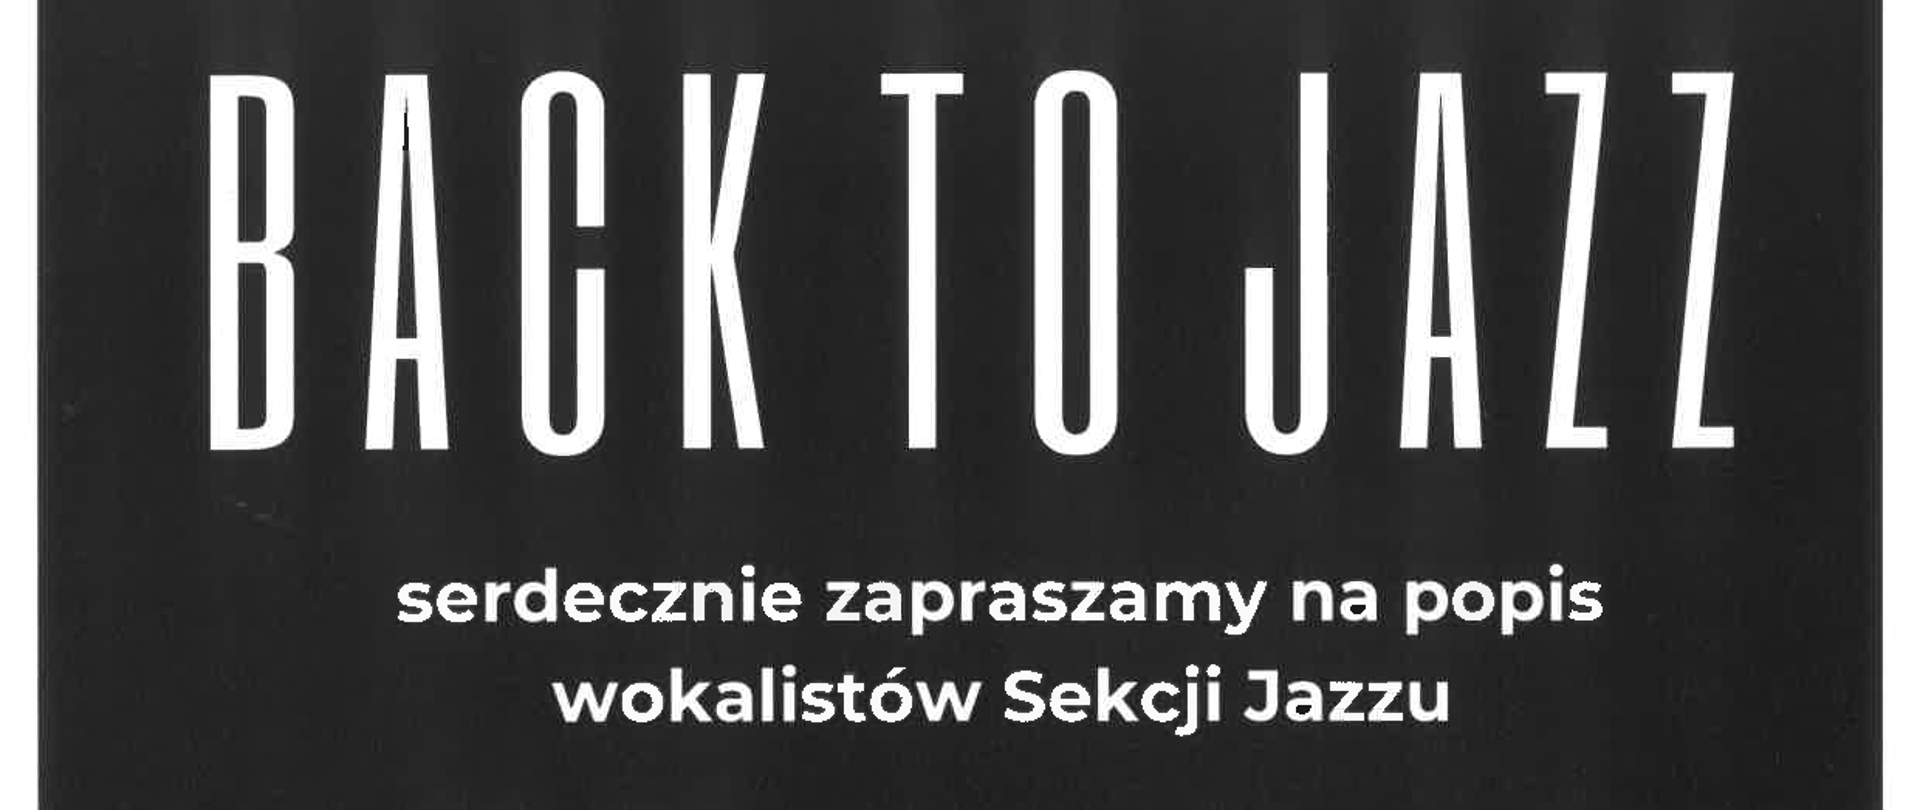 BACK TO JAZZ
serdecznie zapraszamy na popis wokalistów Sekcji Jazzu
17:00
11.04.2024
sala 513